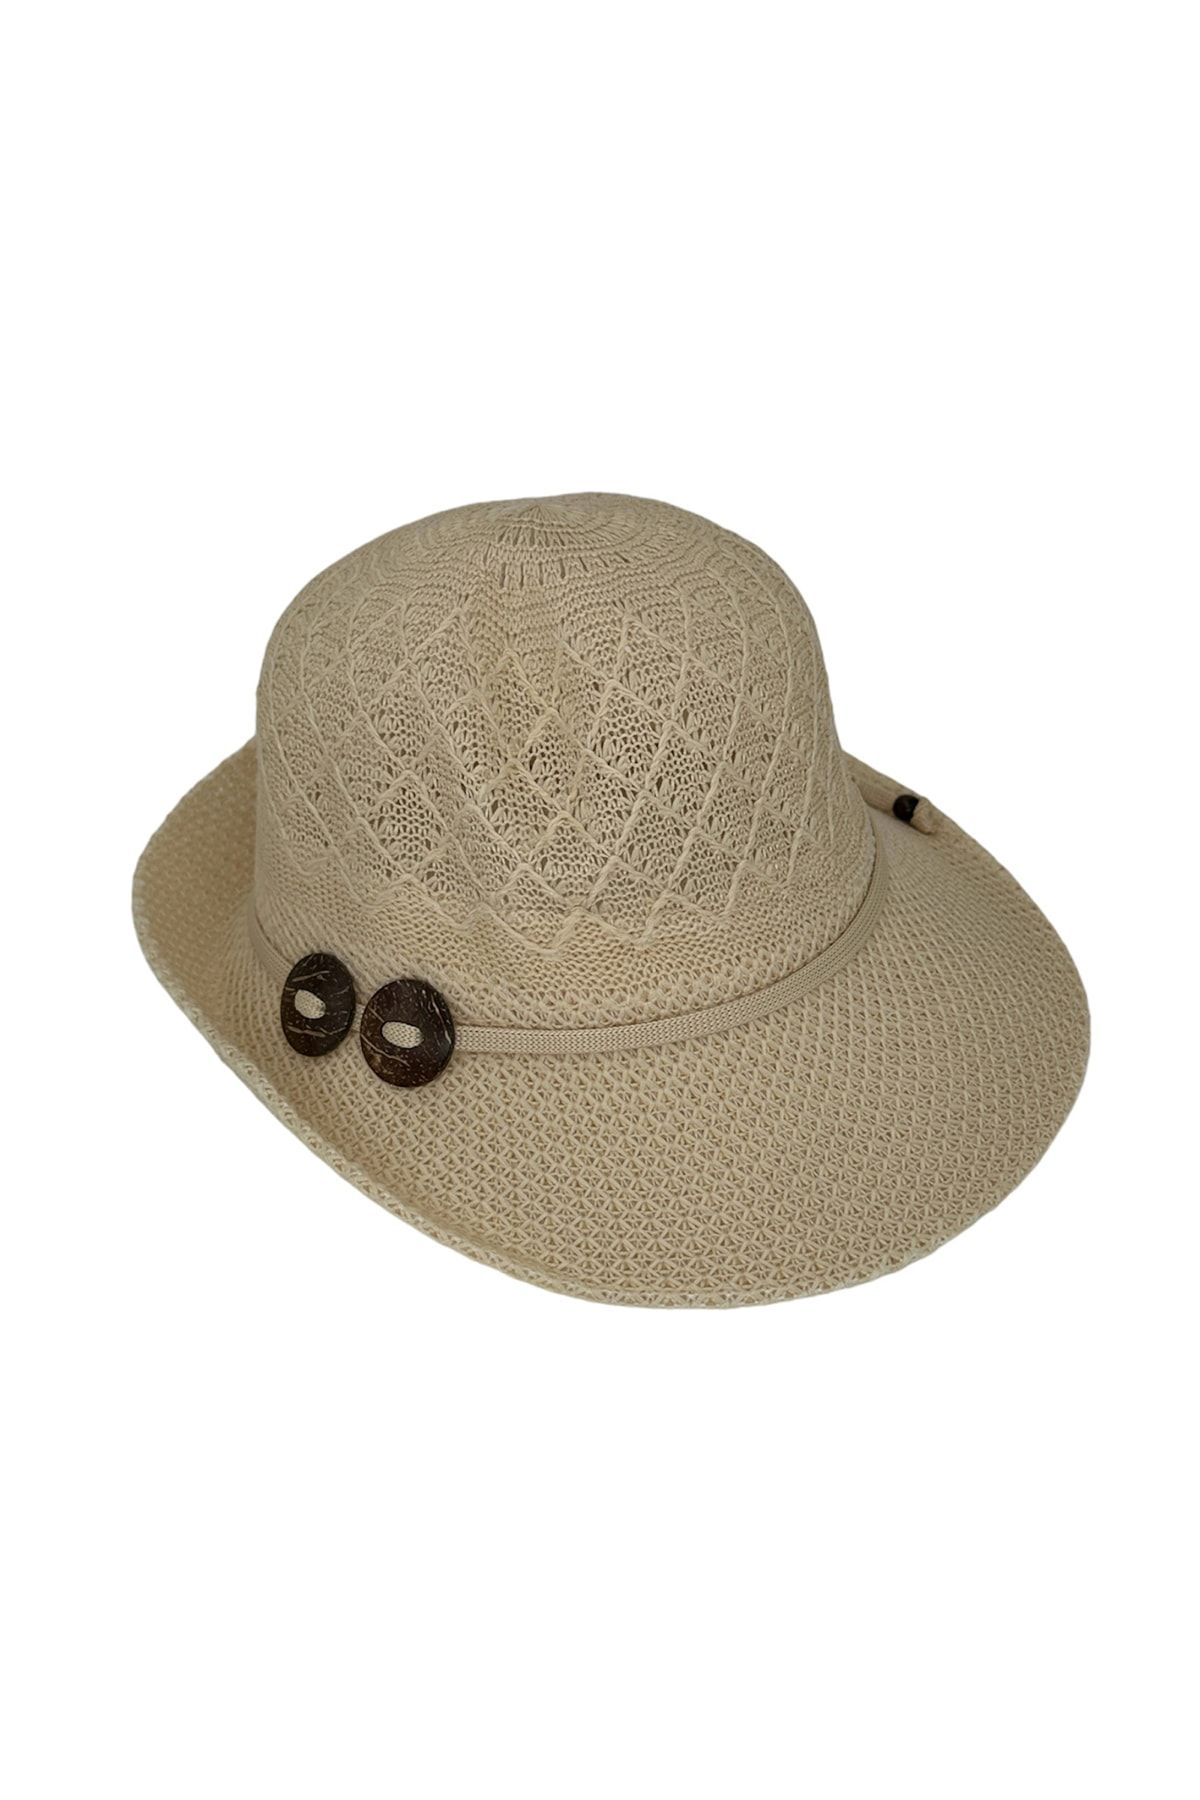 Beoje Kadın Şapkası Hasır Desenli Ahşap Fiyonk Model Akdsp-0052